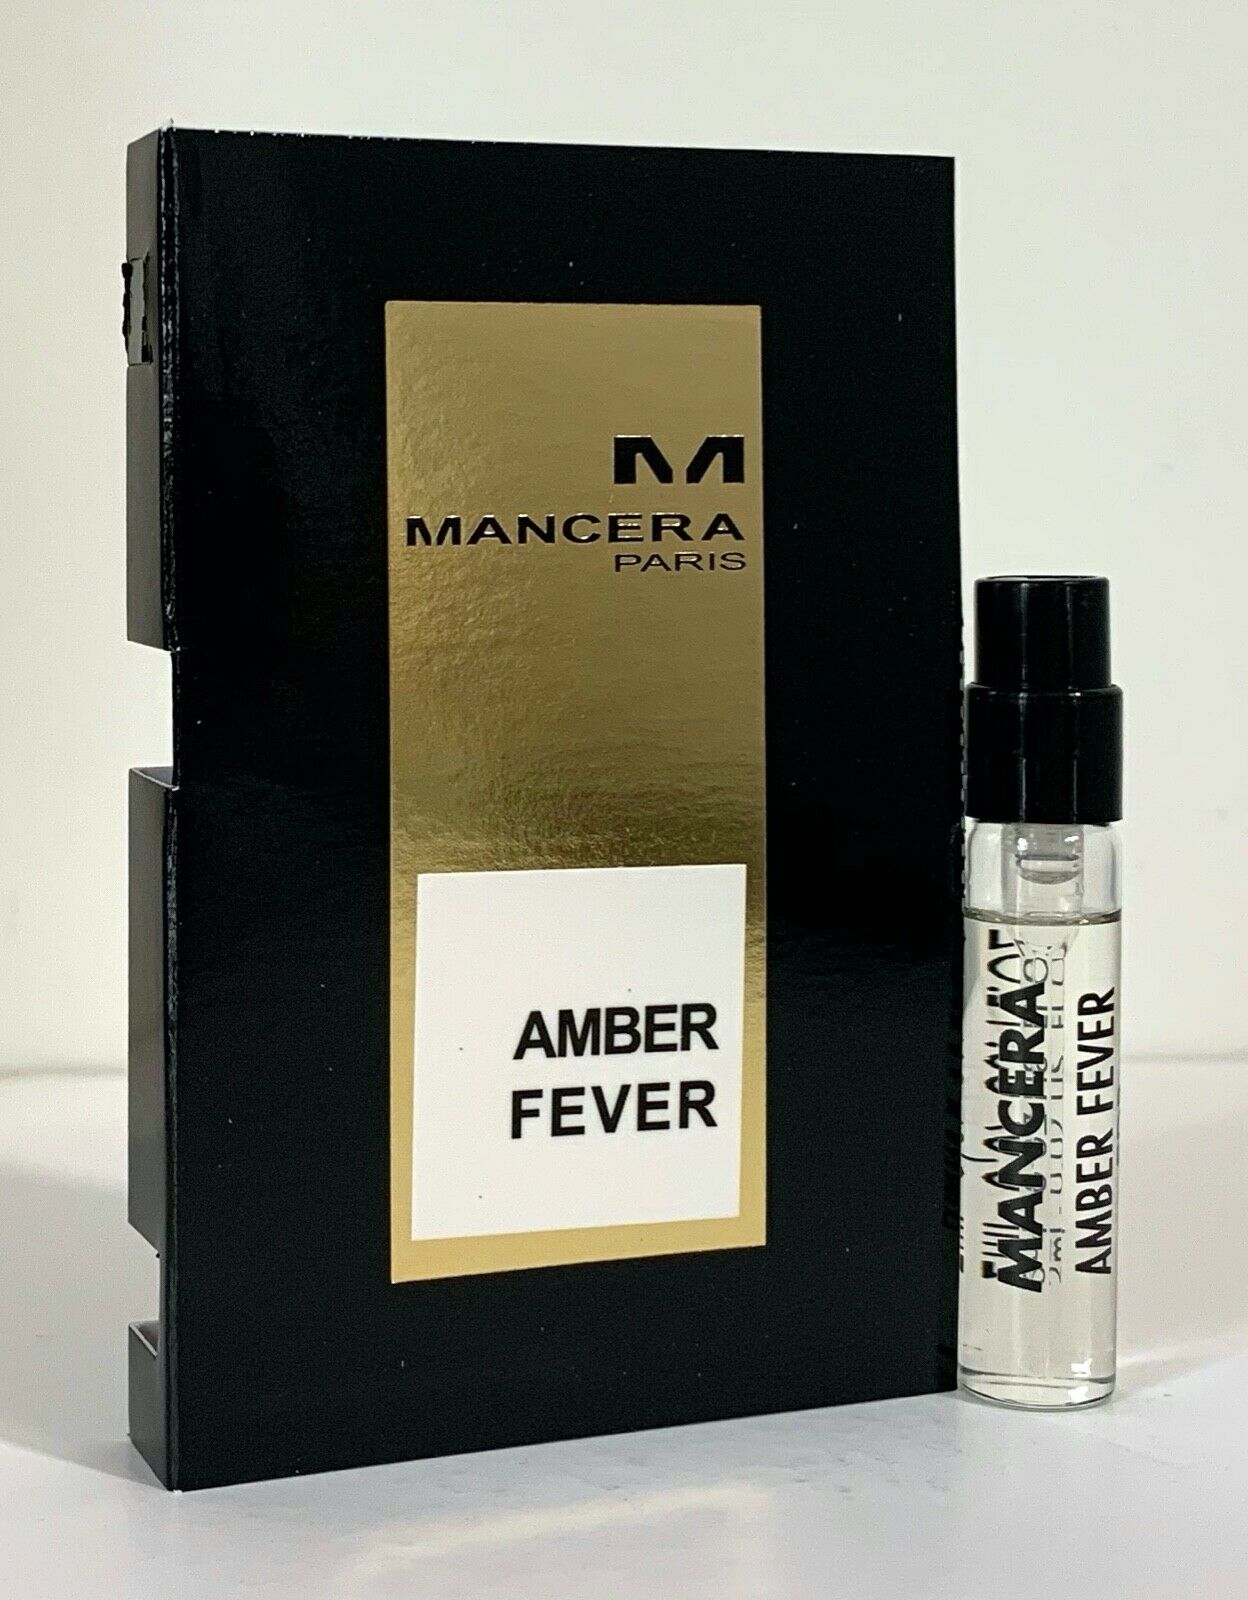 Mancera Amber Fever oficjalna próbka zapachu 2ml 0.06 fl. uncja, Mancera Amber Fever 2 ml 0.06 uncji. uncja oficjalna próbka perfum